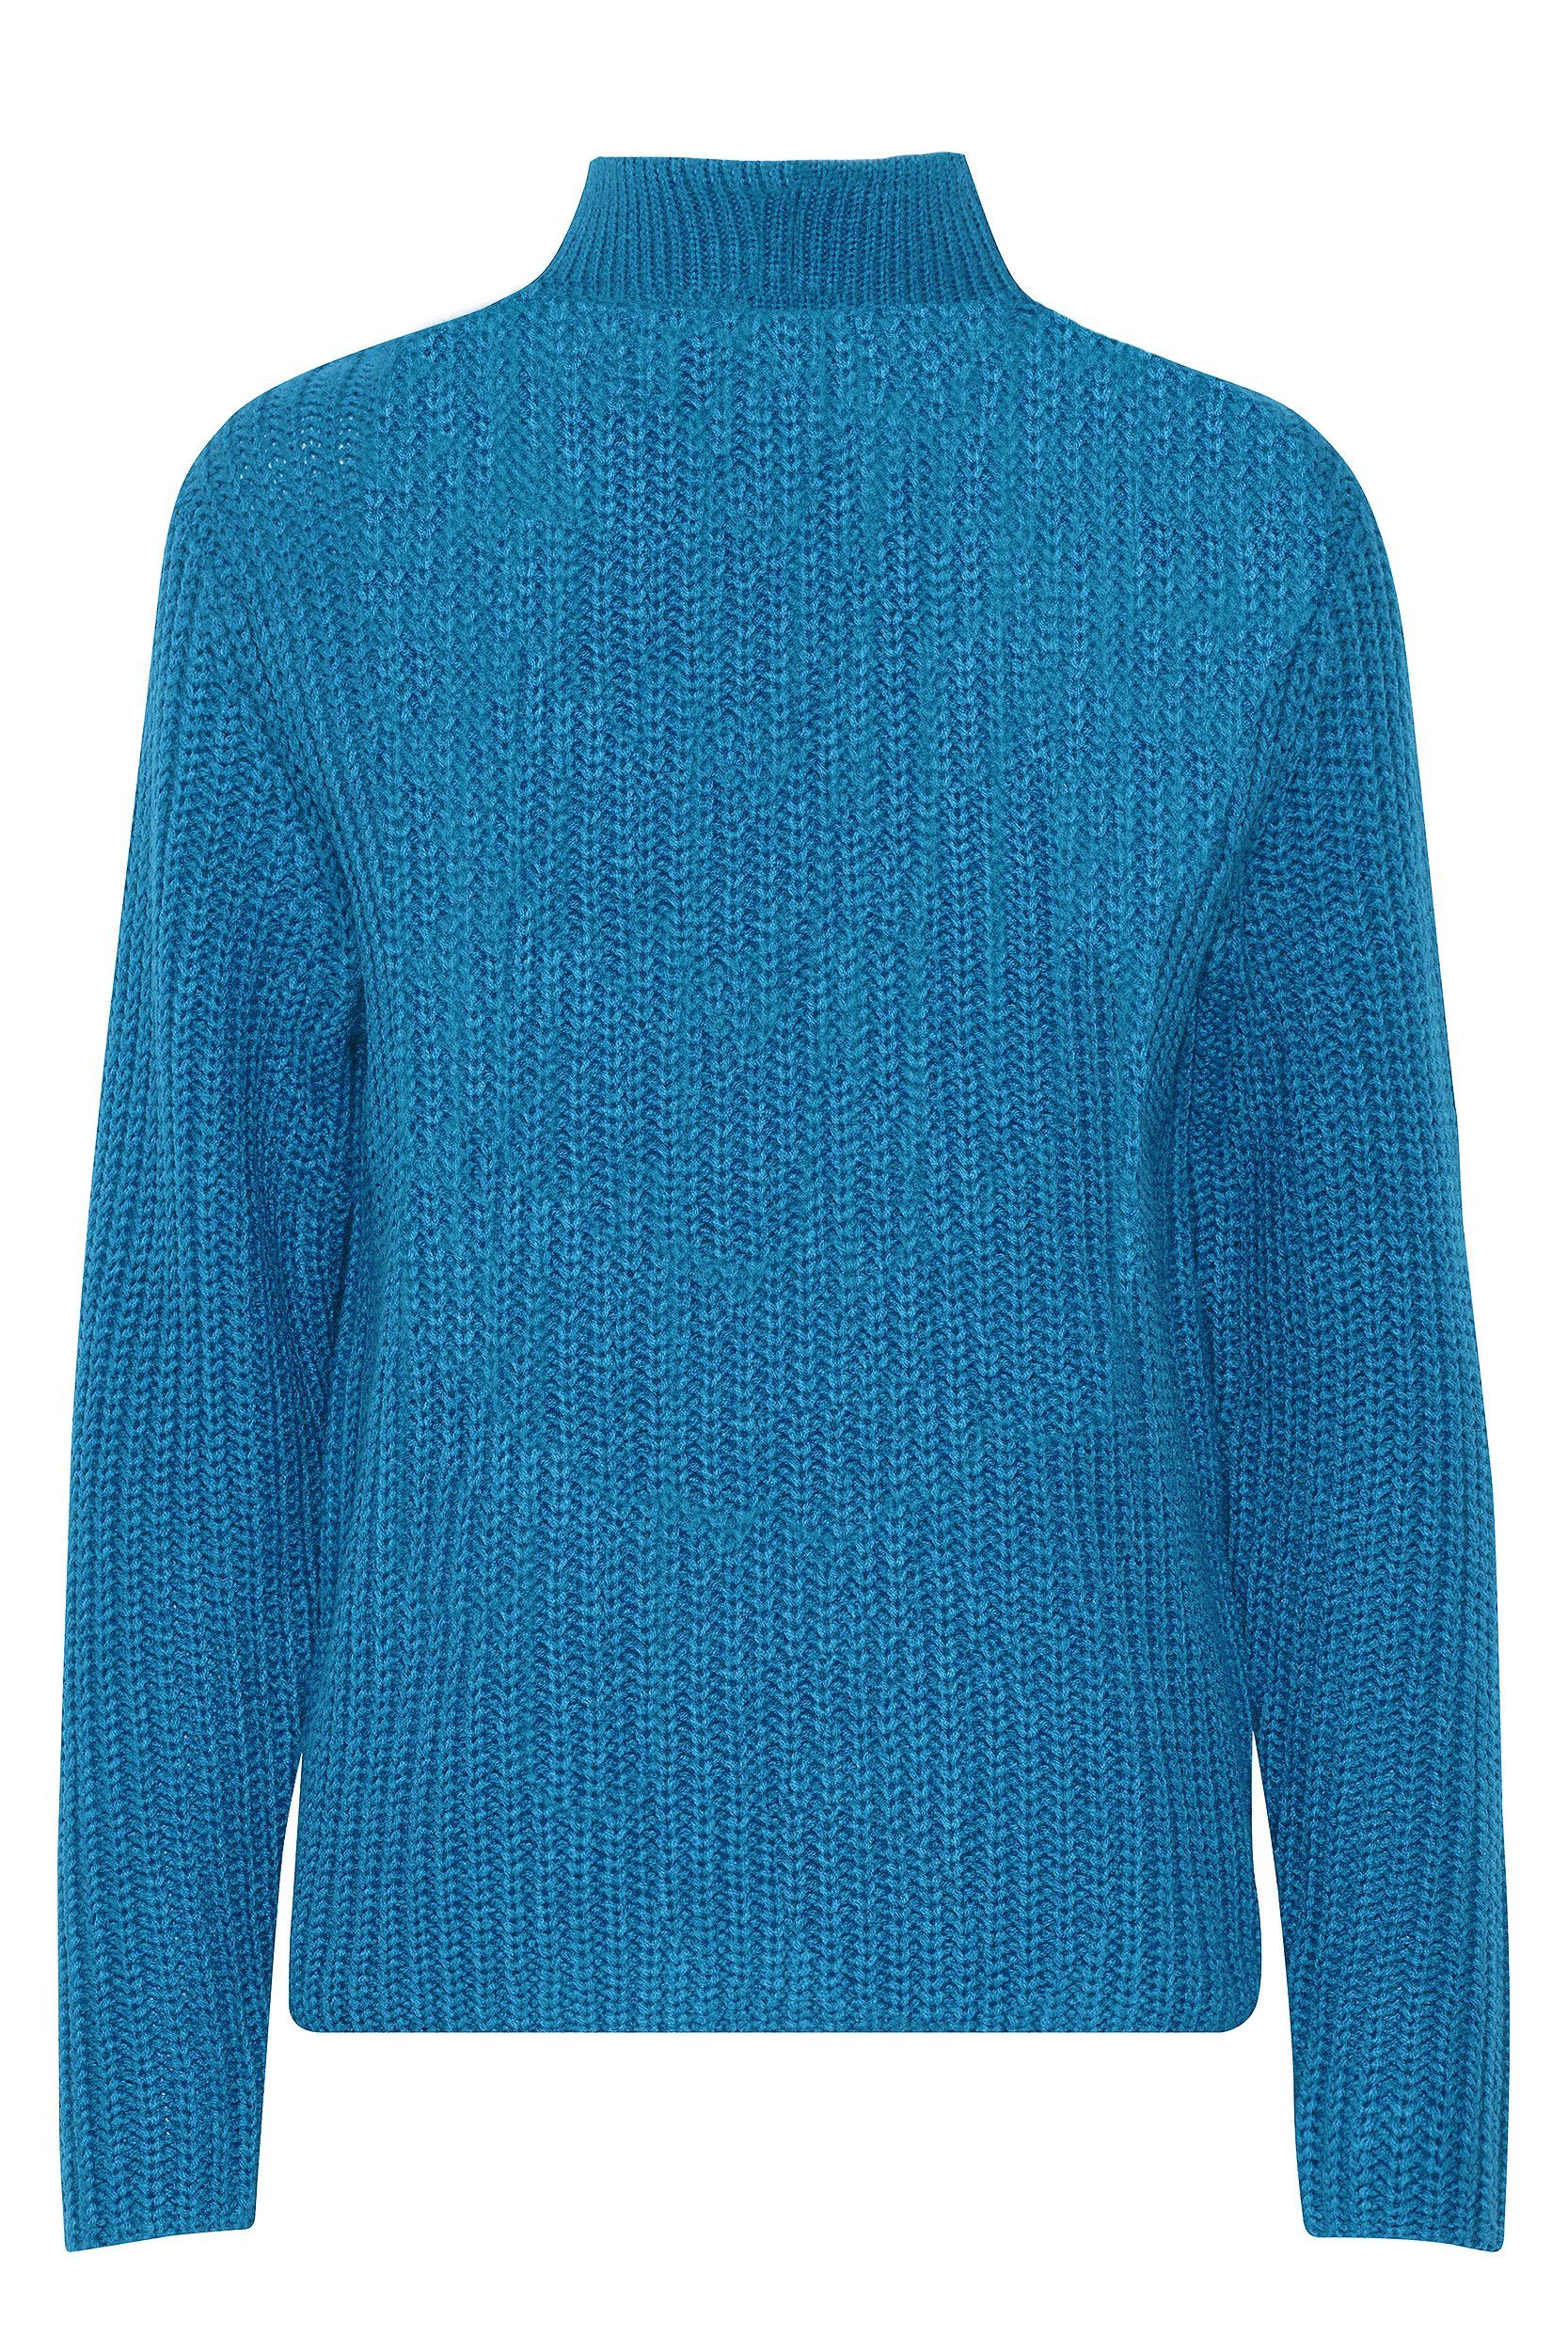 Blau b.young Pullover Strickpullover 6677 Reißverschluss Troyer in Grobstrick Sweater mit Kragen